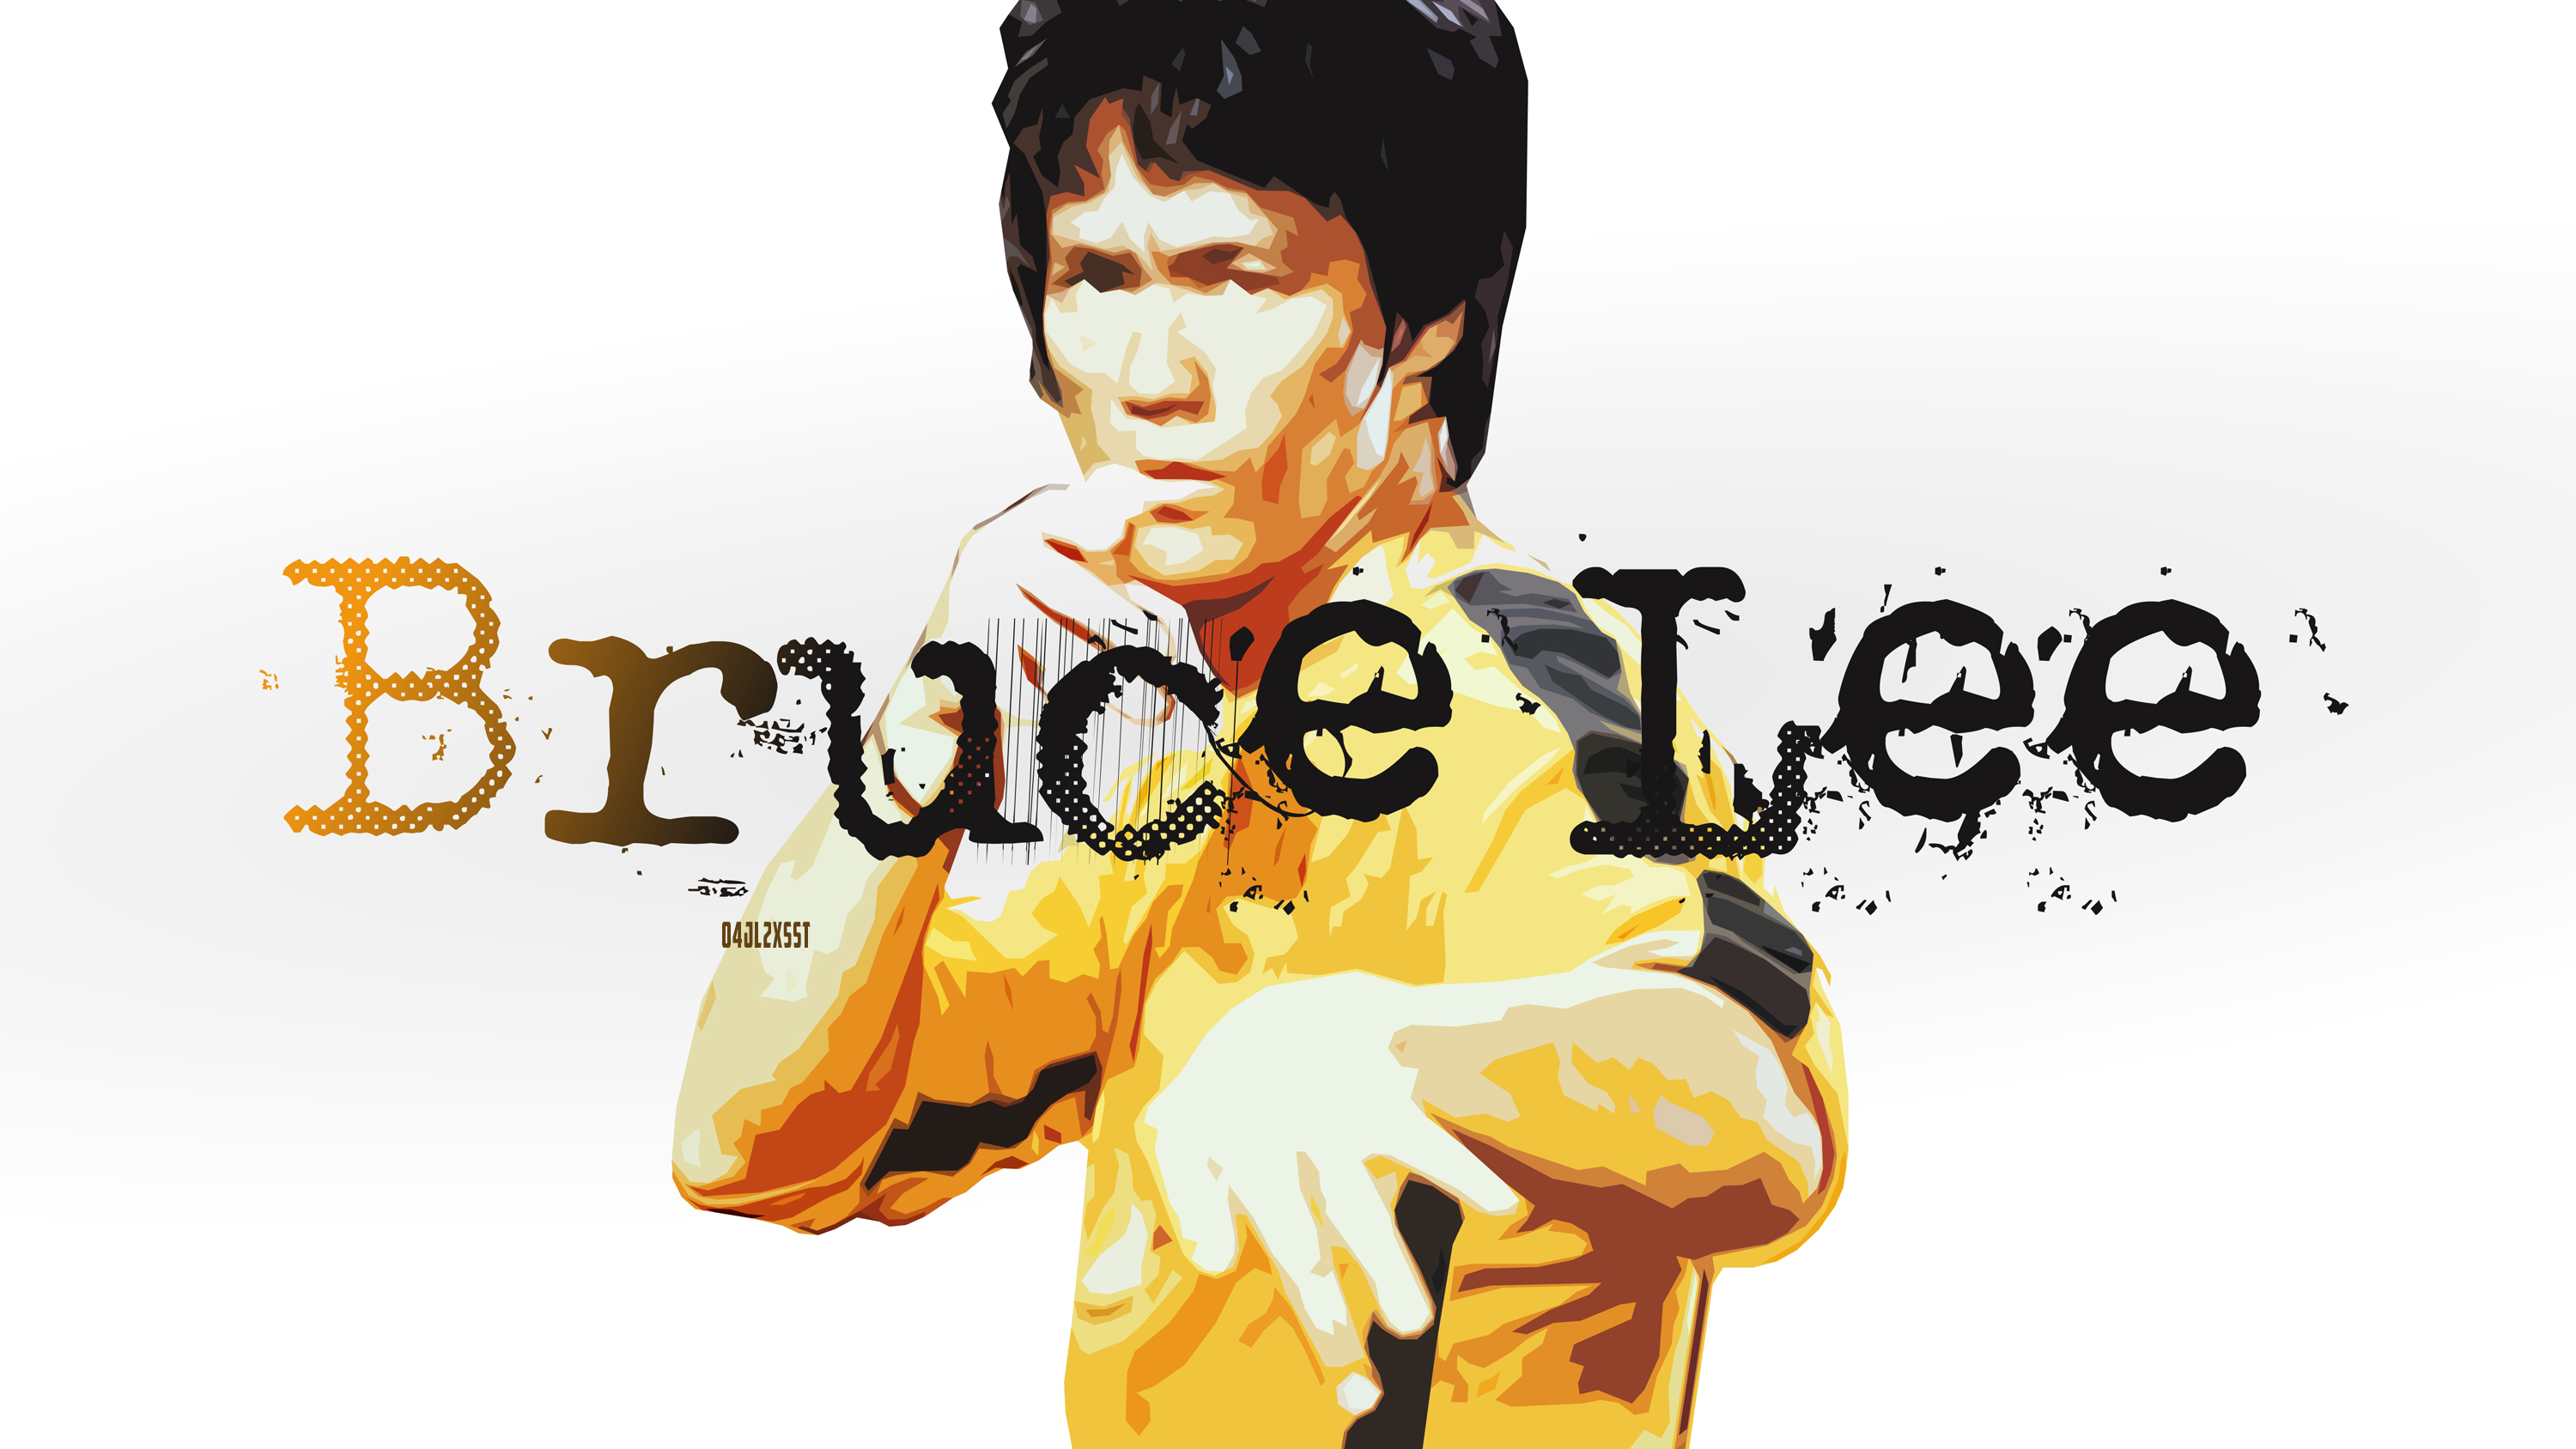 Descarga gratuita de fondo de pantalla para móvil de Celebridades, Actor, Artes Marciales, Bruce Lee, Kung Fu.